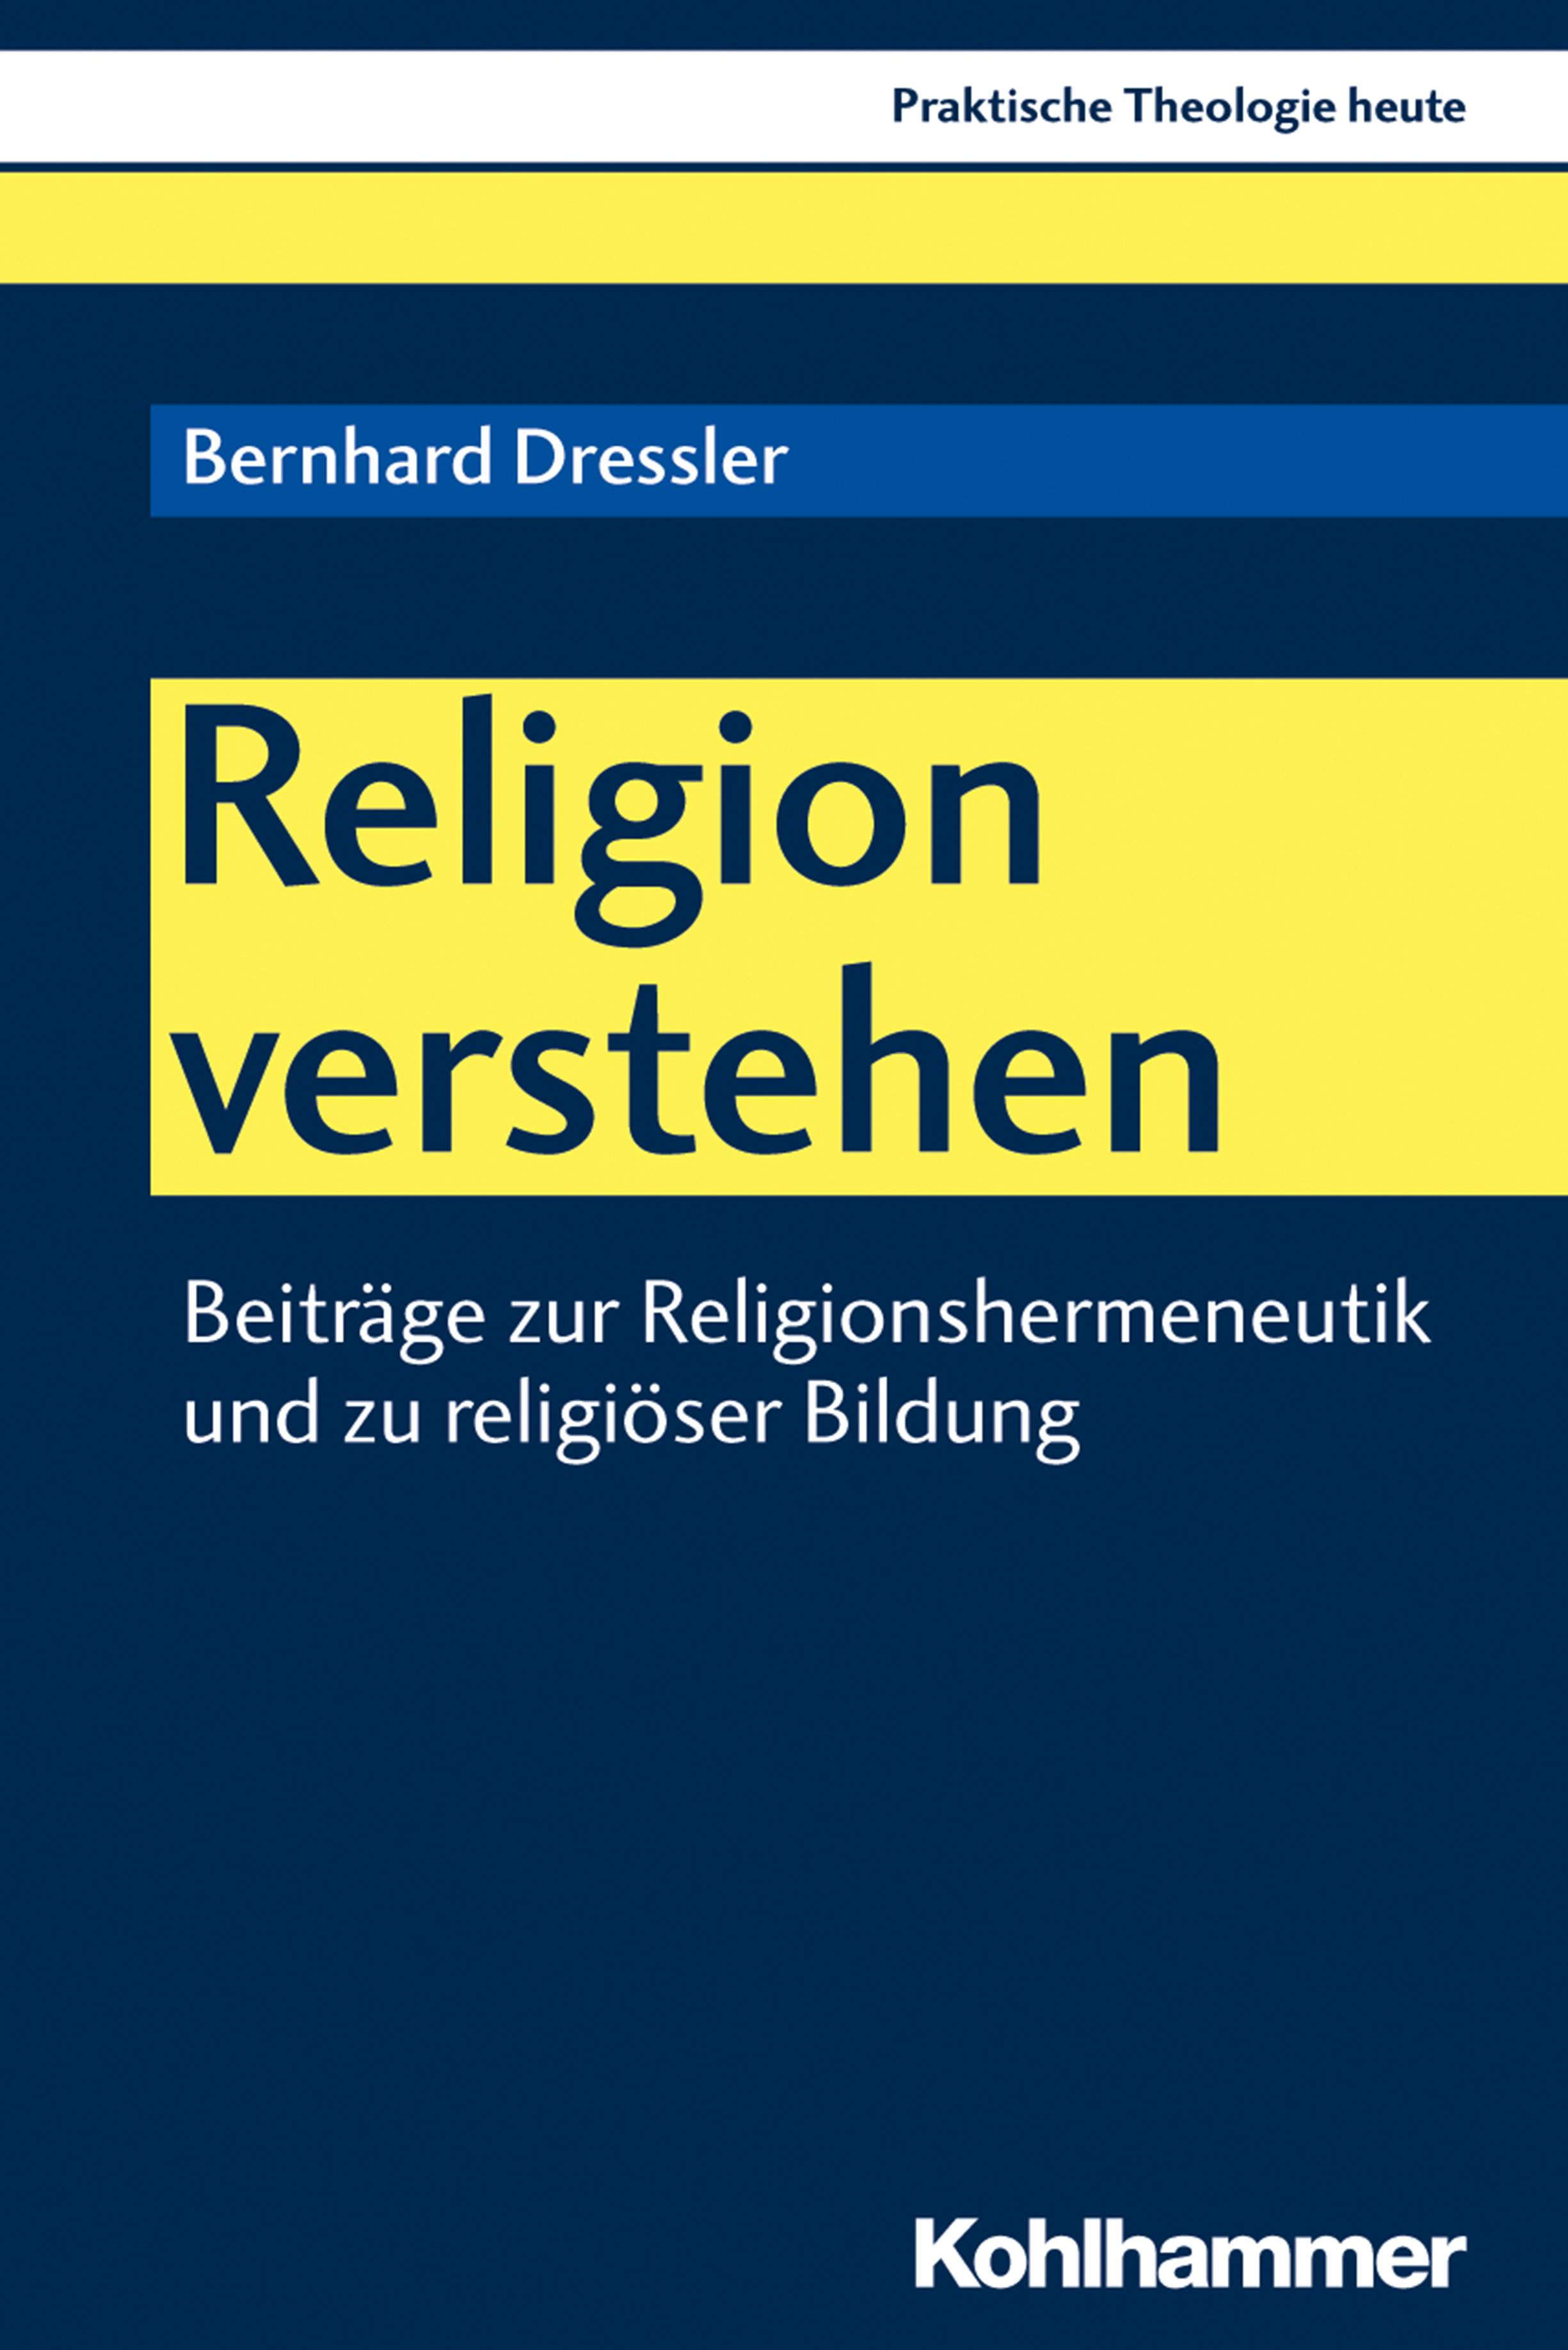 Religion verstehen: Beiträge zur Religionshermeneutik und zu religiöser Bildung - Bernhard Dressler